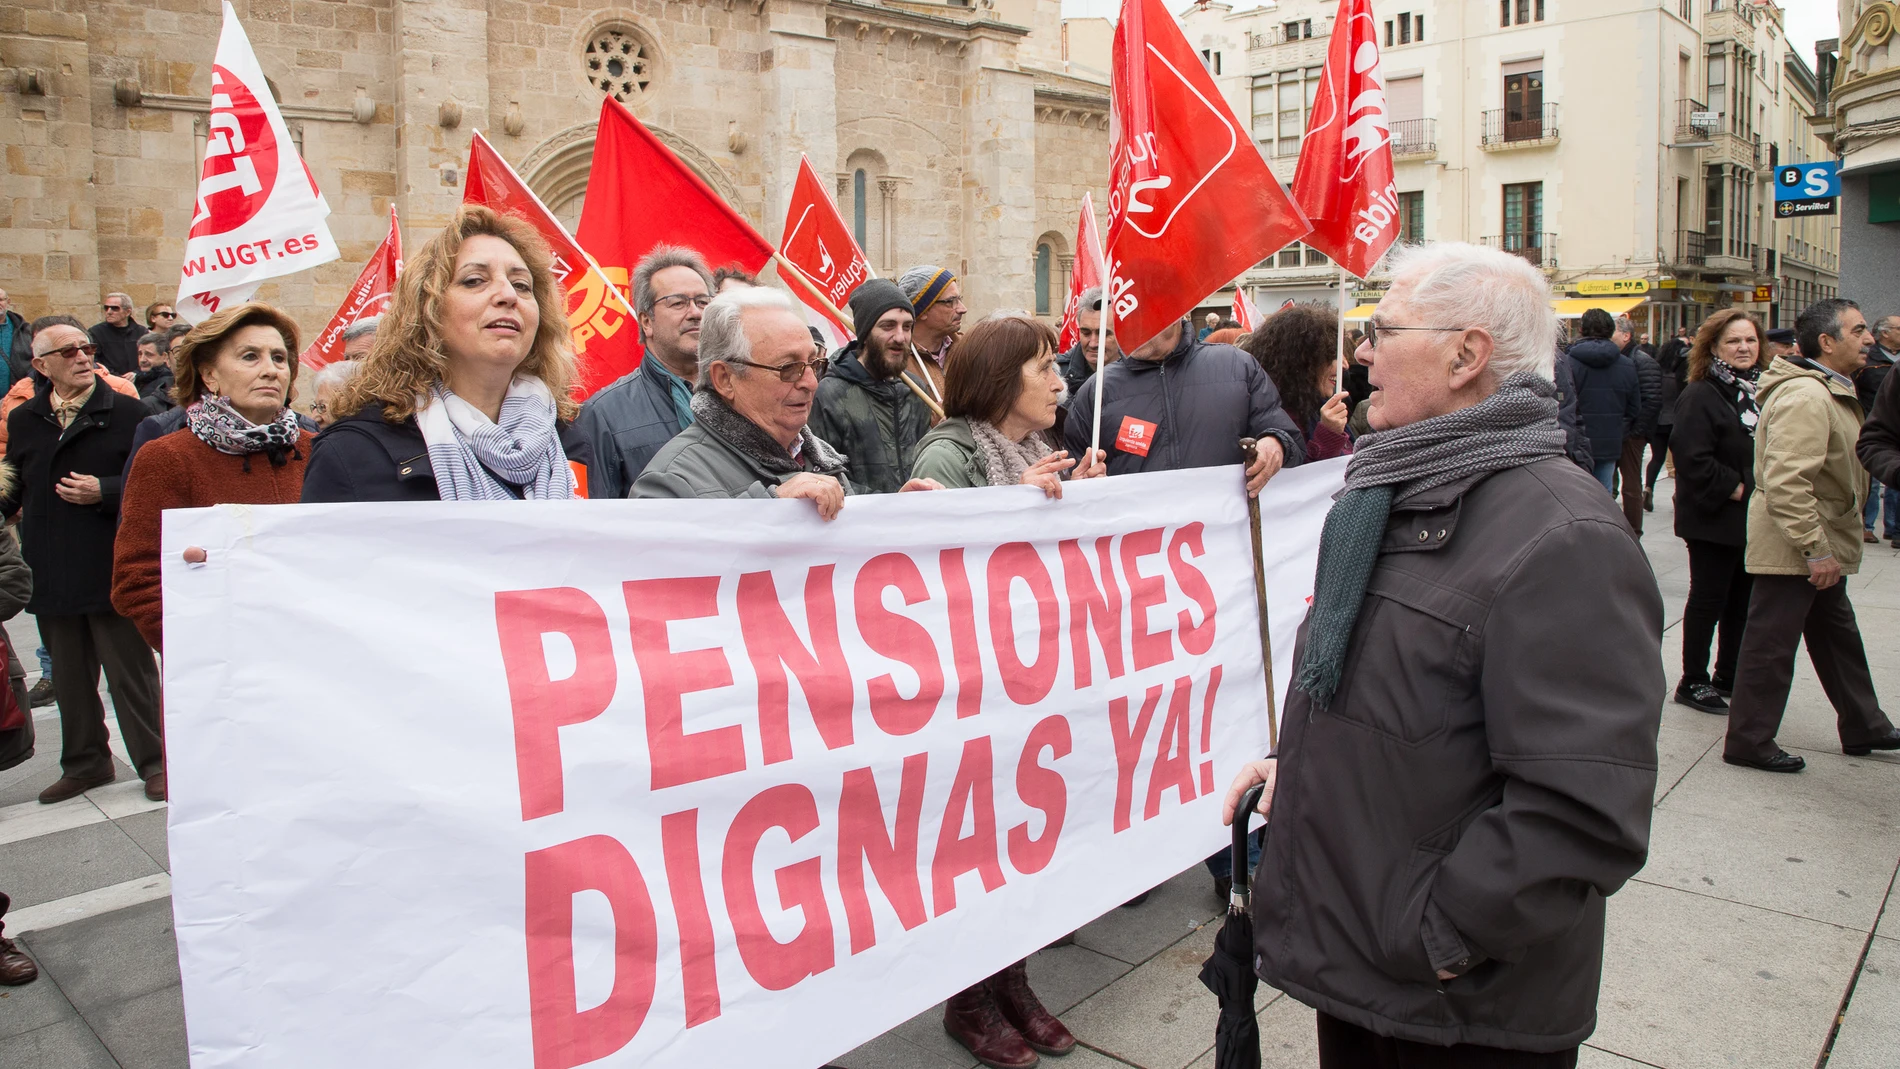 Manifestación por las pensiones y los empleos dignos en Zamora